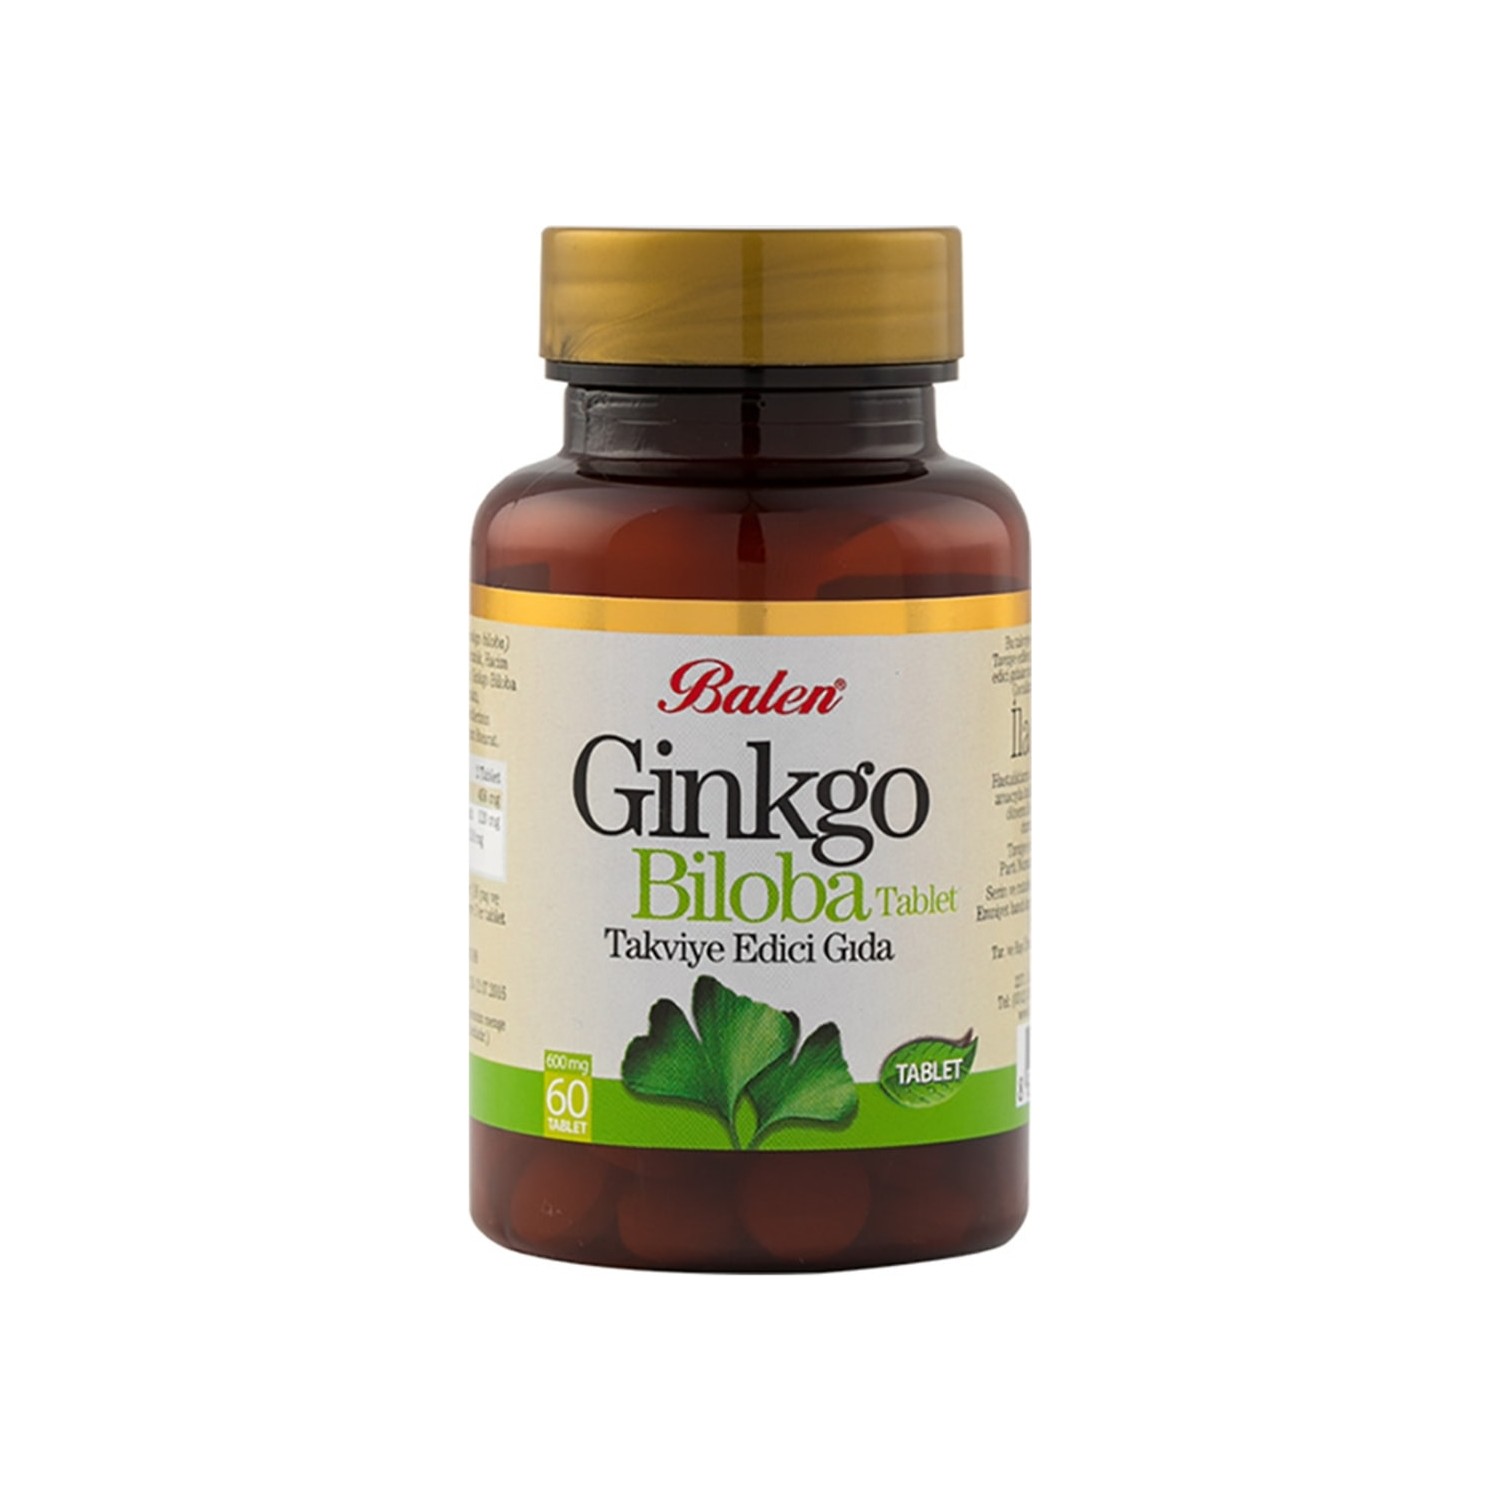 Активная добавка Balen Ginkgo Biloba Capsules, 60 капсул, 600 мг ginkgo biloba 60 tablets 600 mg